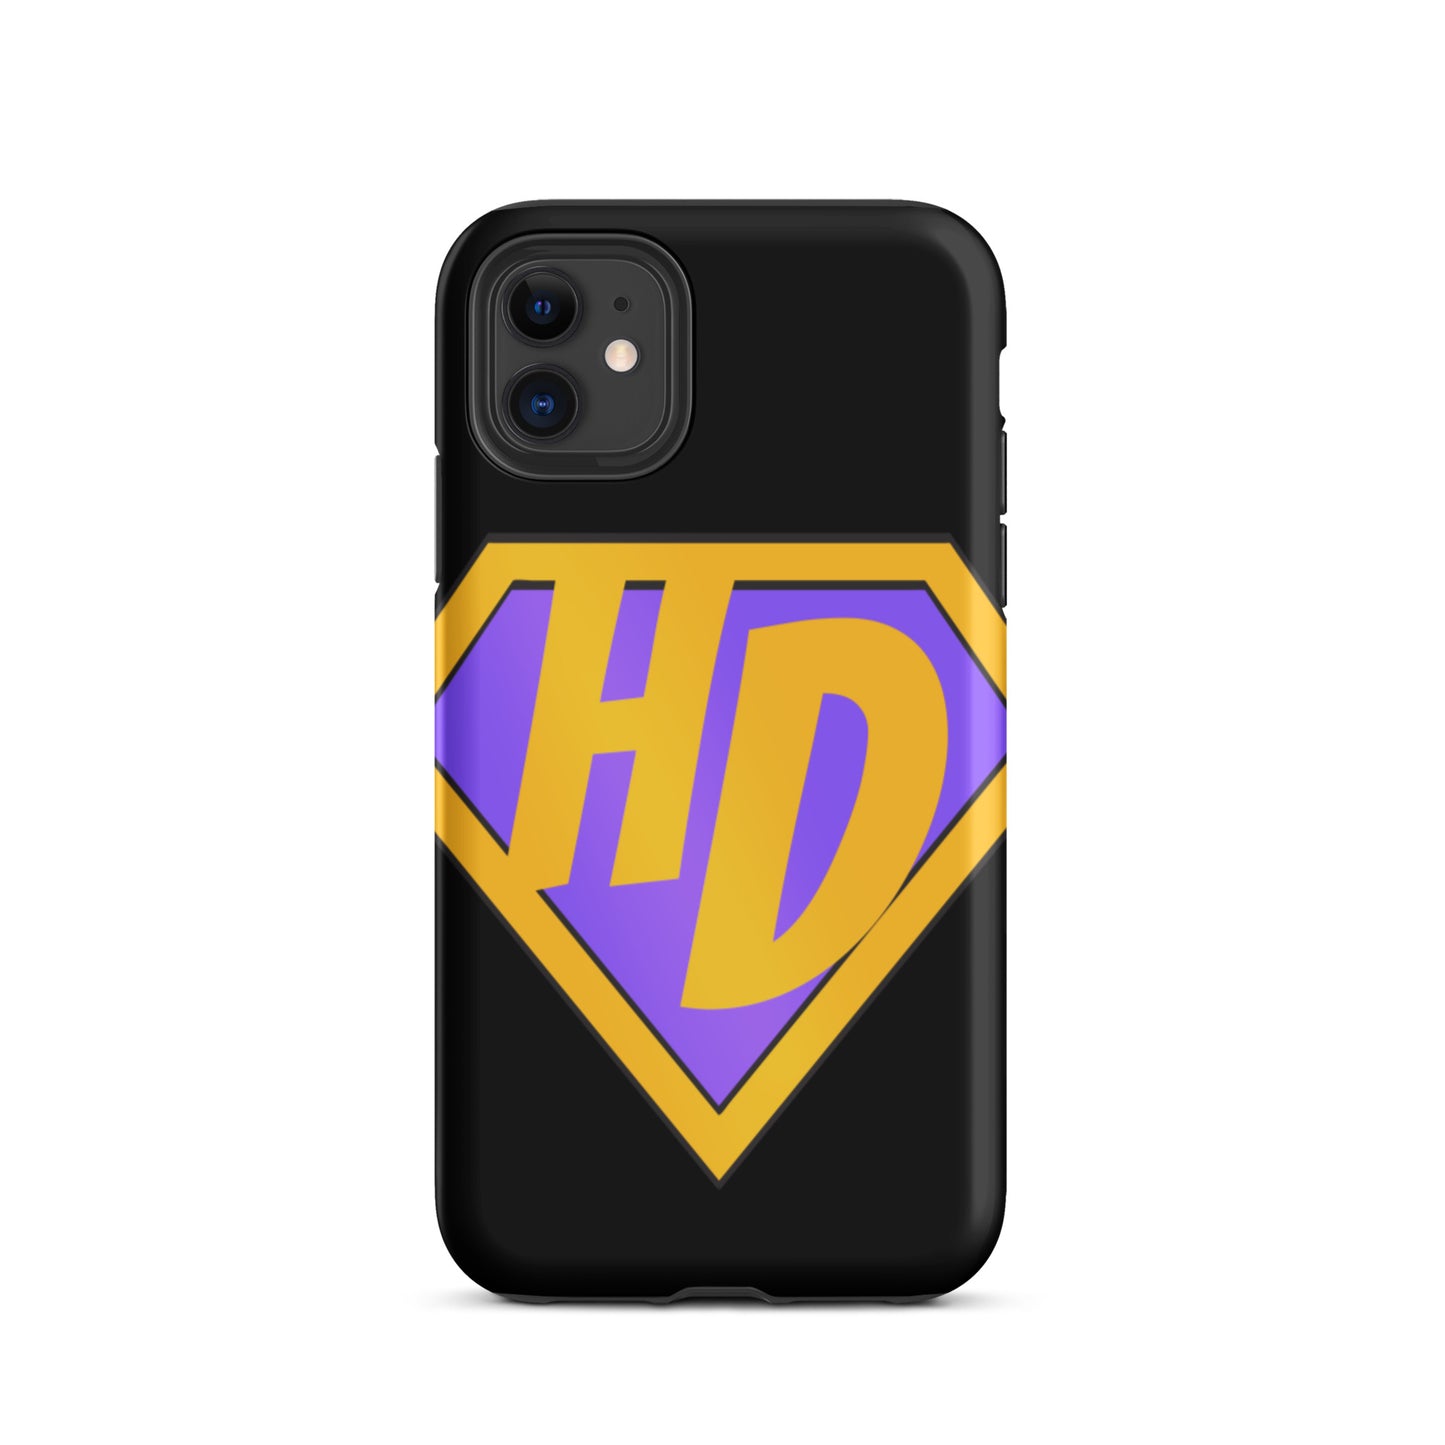 Super Dandy Tough iPhone case